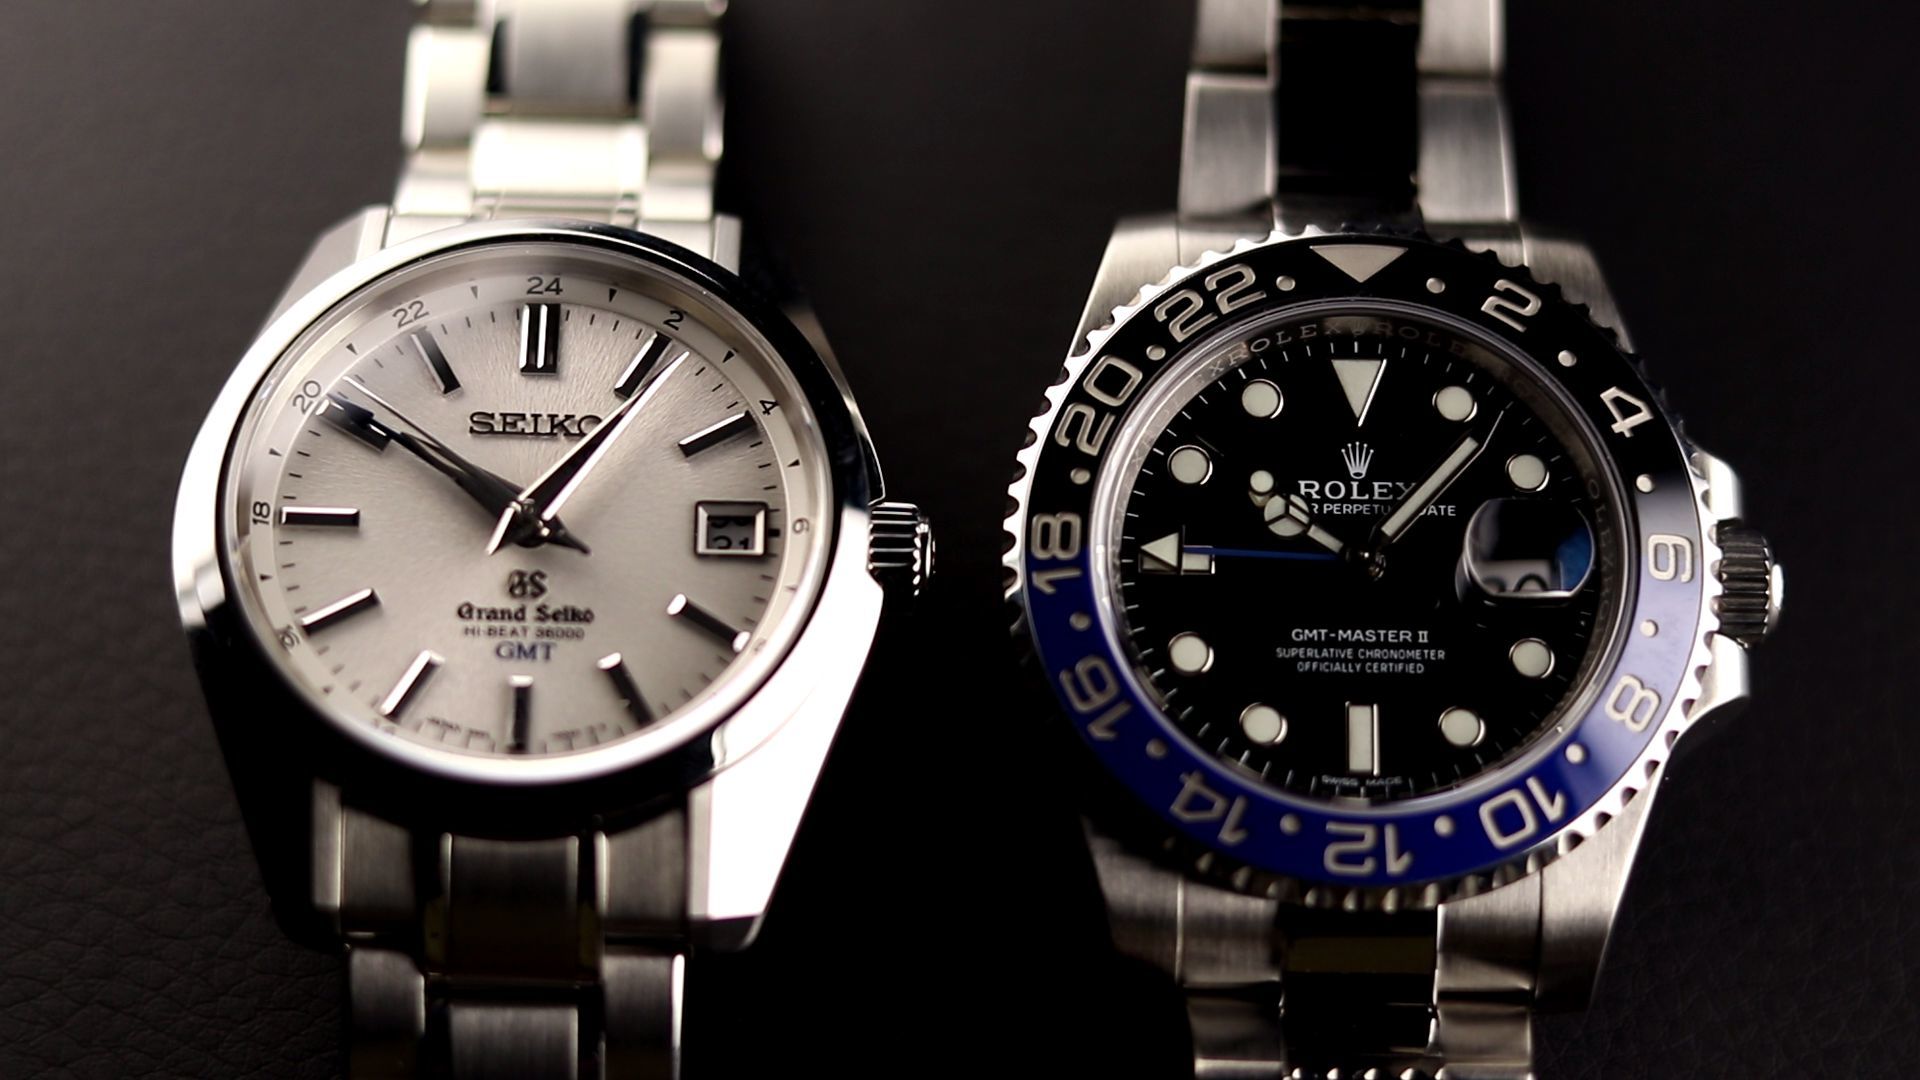 Grand Seiko vs Rolex 'Batman' Watch Review - Timepieces Blog